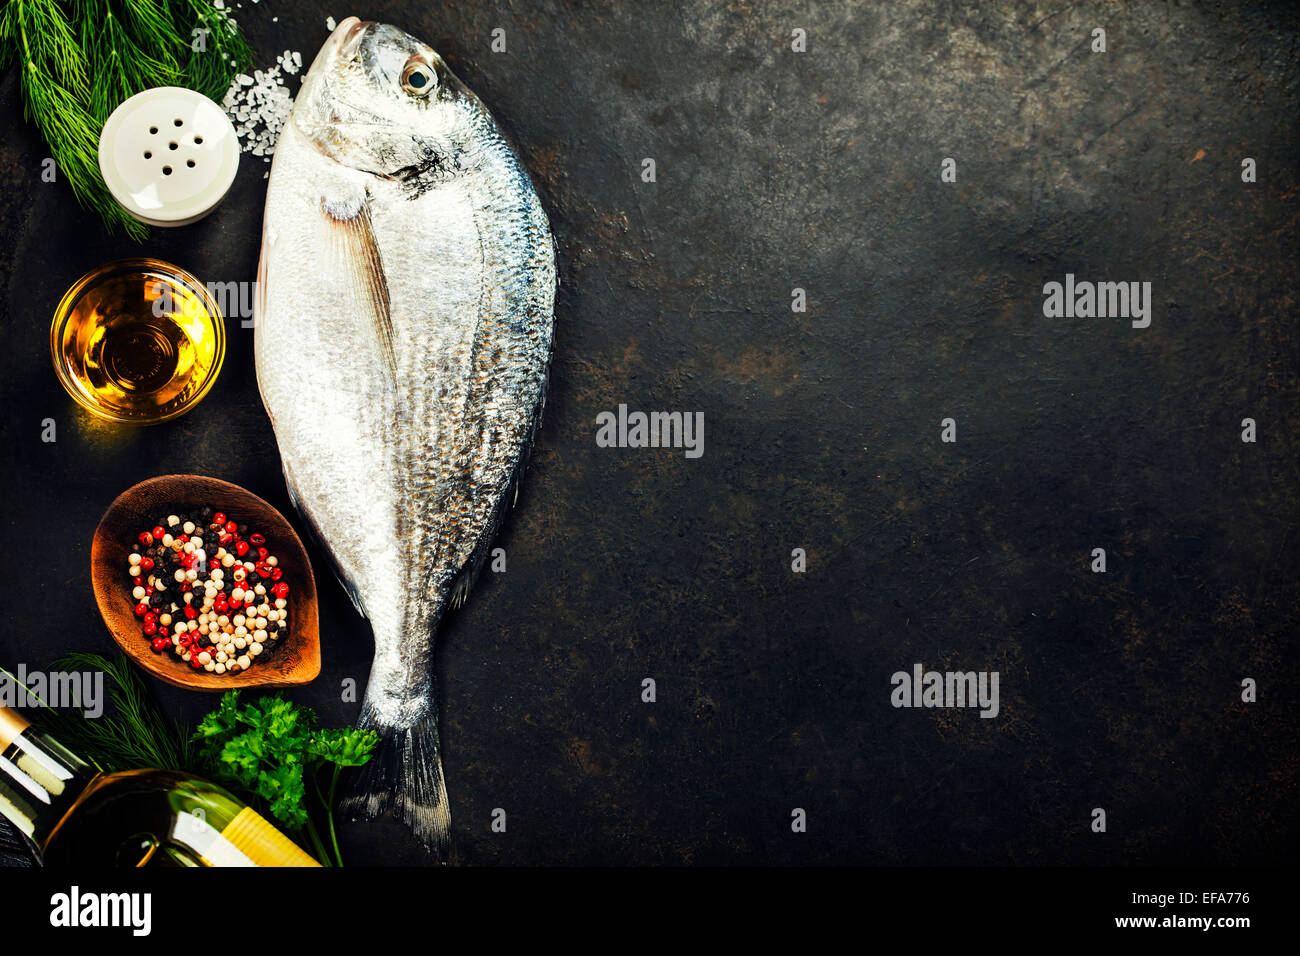 Delizioso pesce fresco sul vintage scuro dello sfondo. Pesce con erbe aromatiche, spezie e verdure - cibo sano, la dieta o la cottura Foto Stock